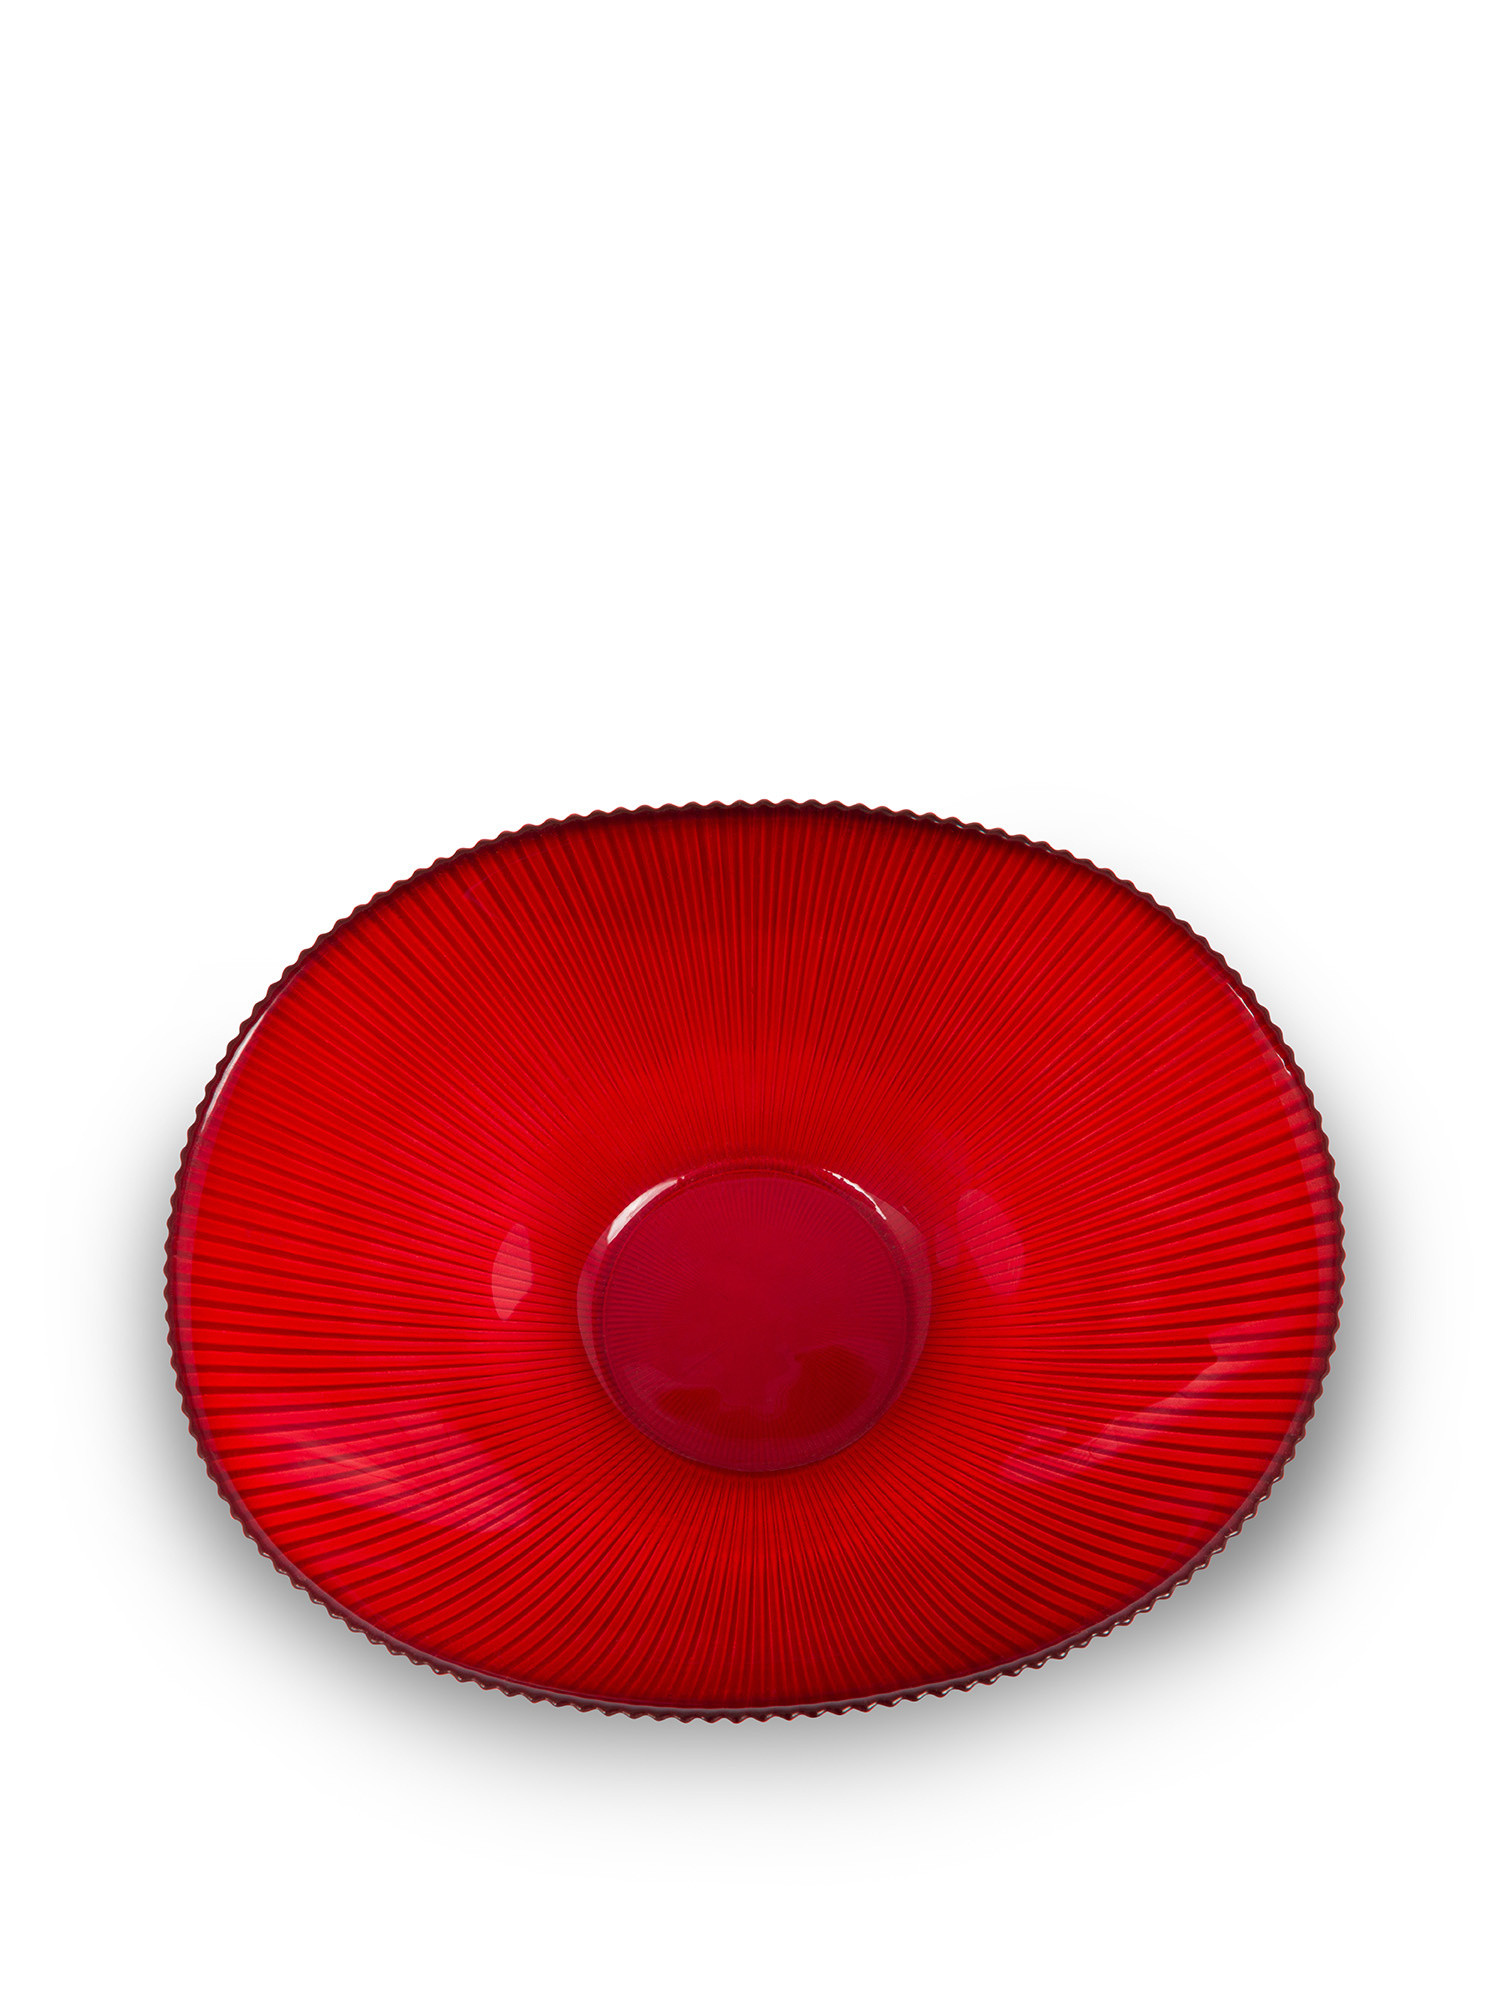 Coppa vetro effetto rigato, Rosso, large image number 1